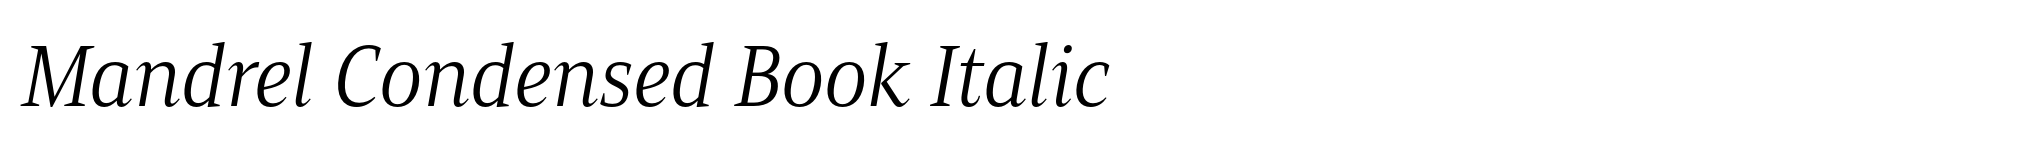 Mandrel Condensed Book Italic image